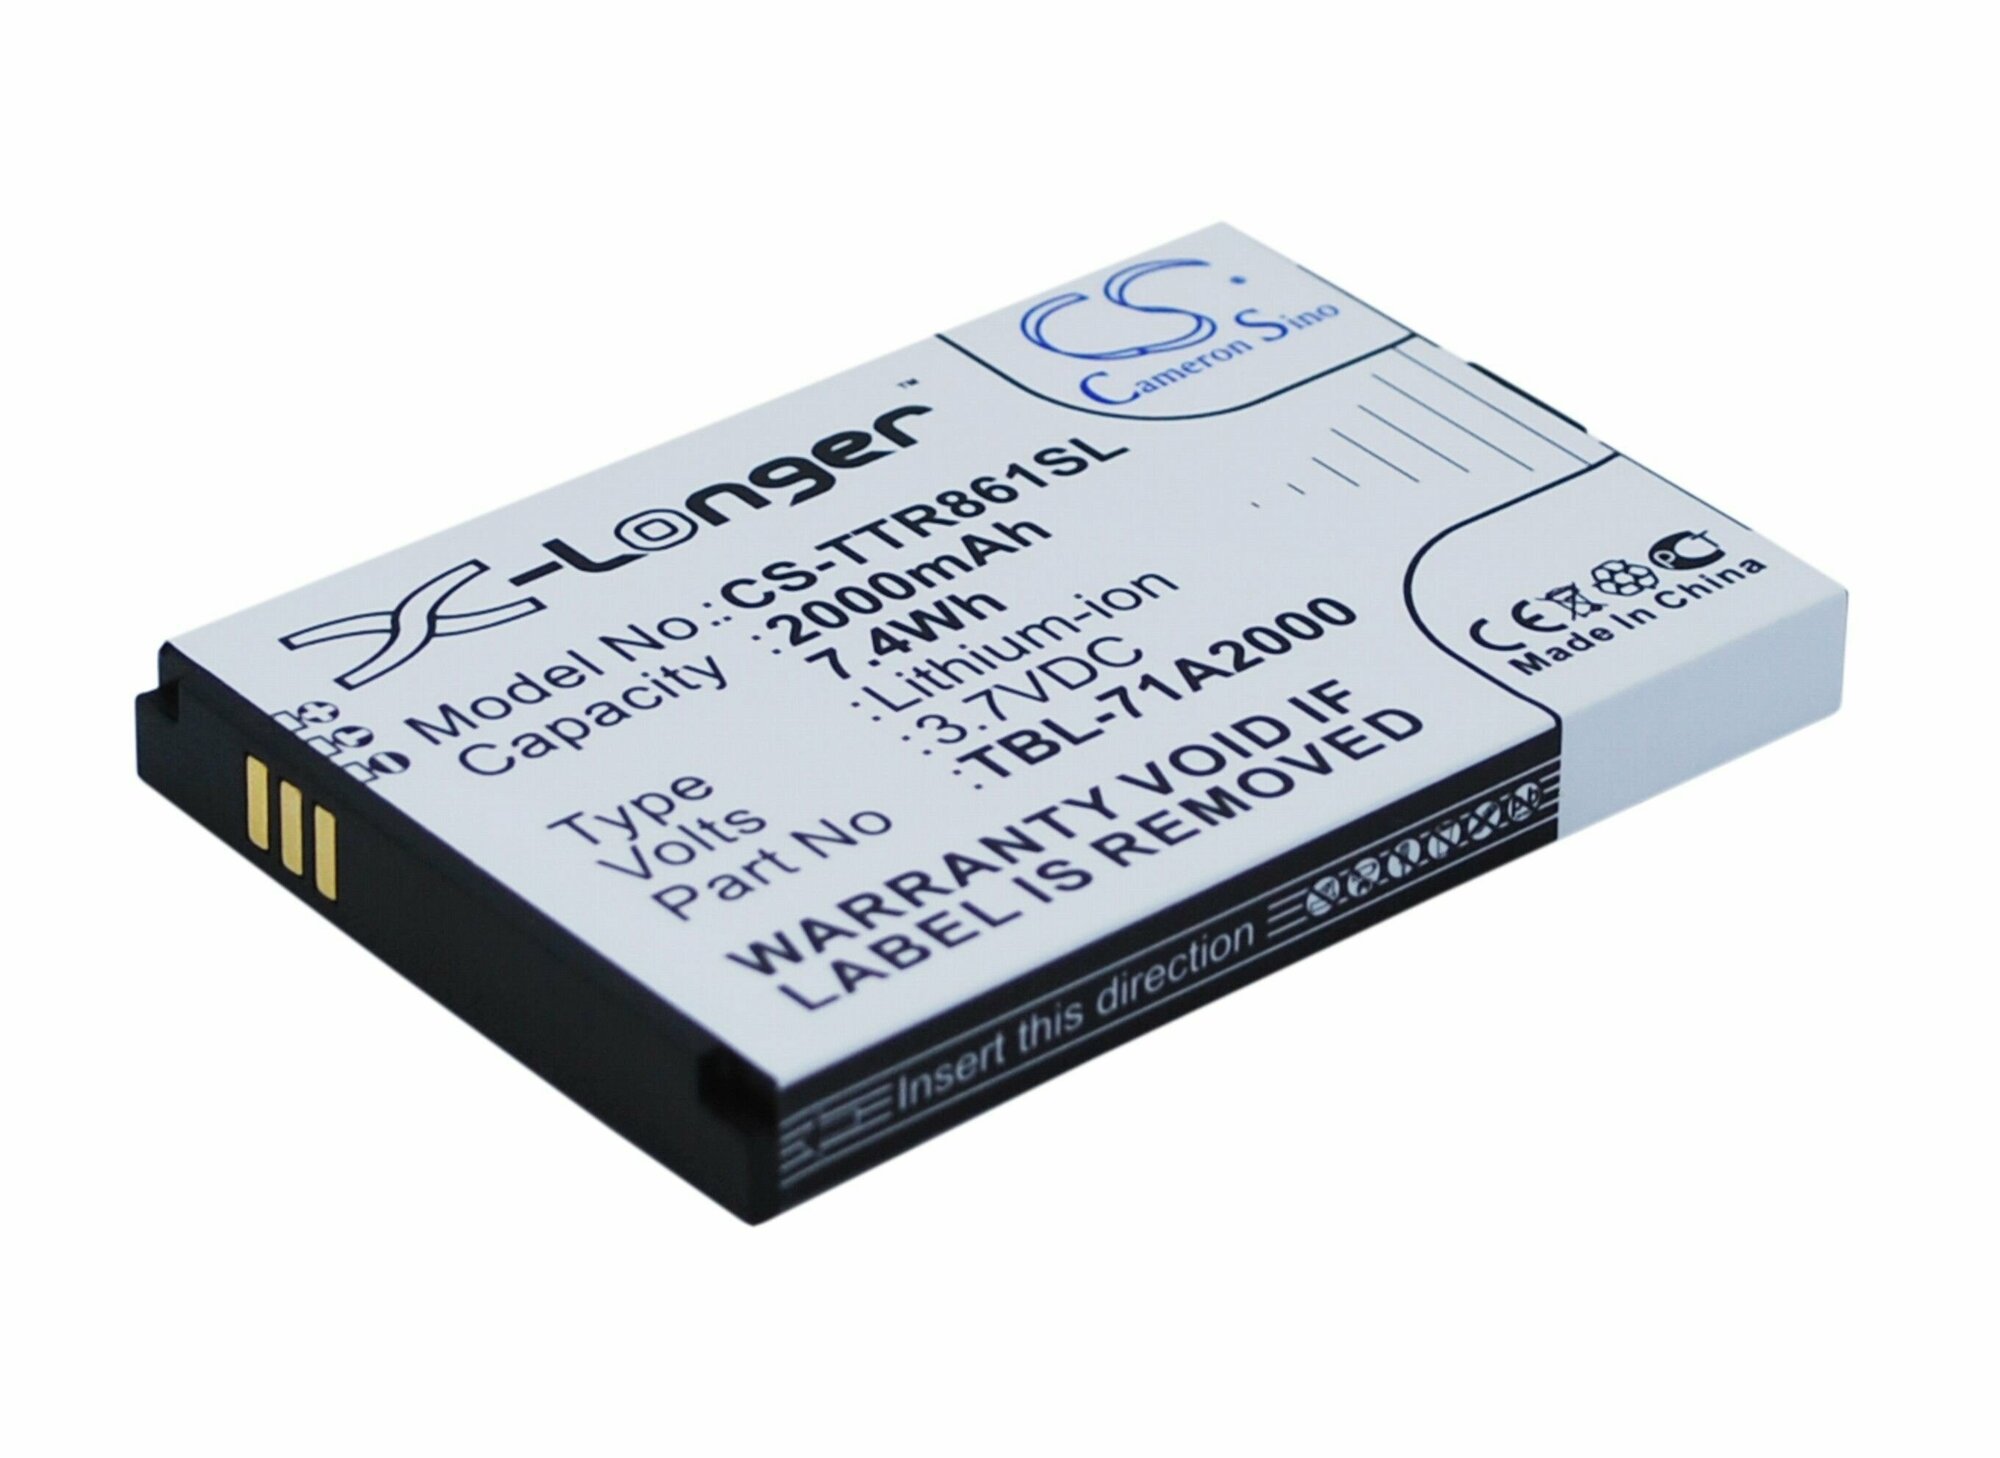 Аккумулятор для TP-Link TBL-71A2000, M7300, TL-TR861, TP-Link роутеров и модемов - CS-TTR861SL от компании Cameron Sino